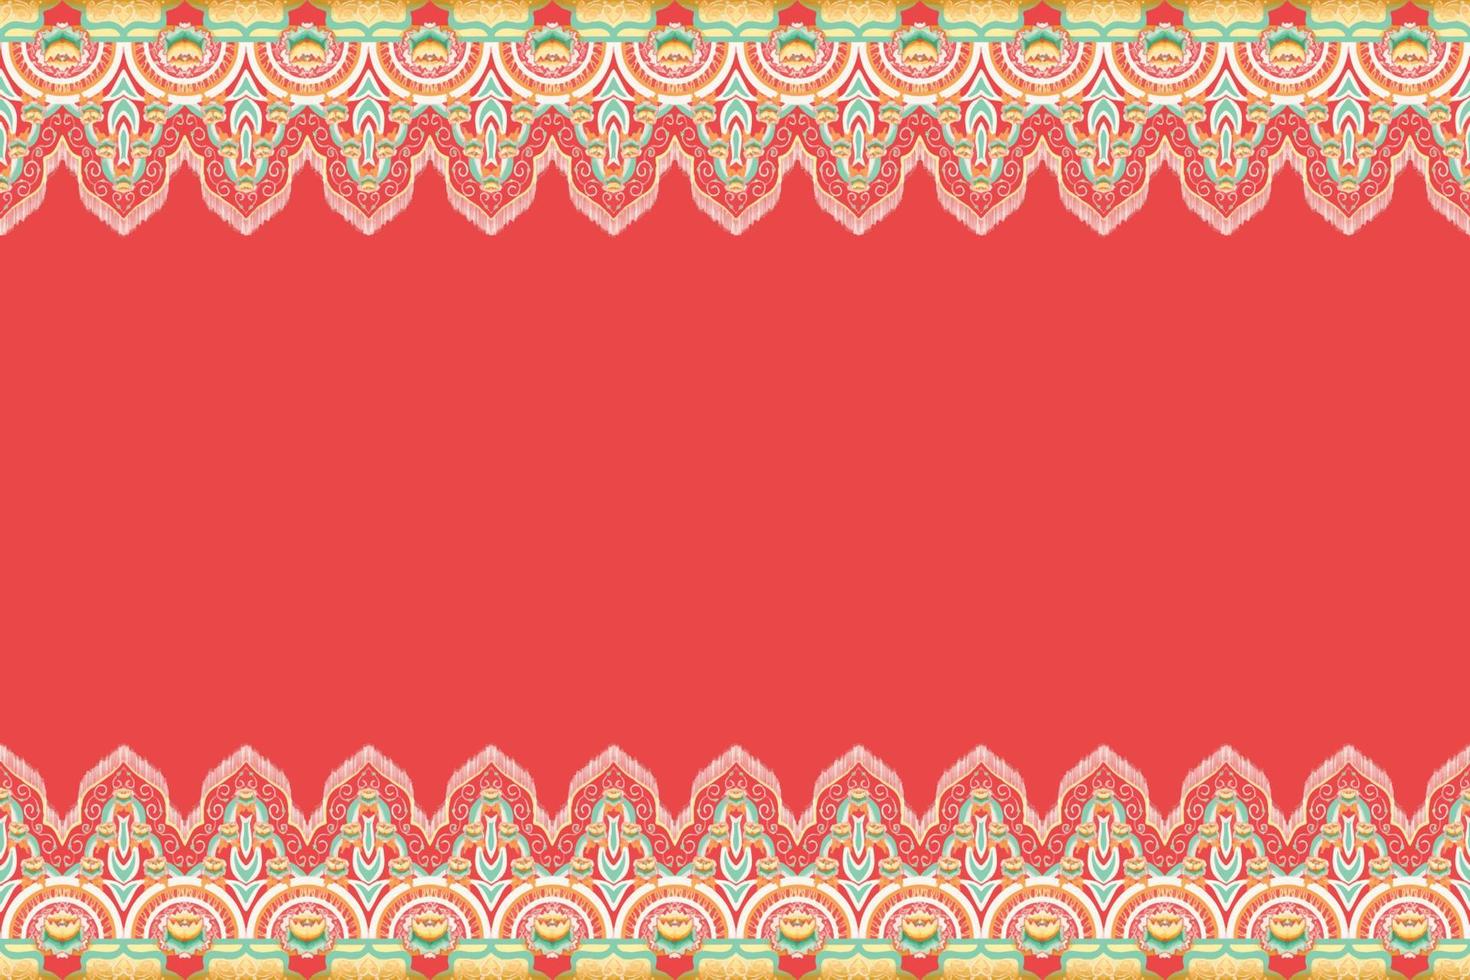 gul, grön, orange blomma på rött. geometriskt etniskt orientaliskt mönster traditionell design för bakgrund, matta, tapeter, kläder, omslag, batik, tyg, vektorillustration broderistil vektor